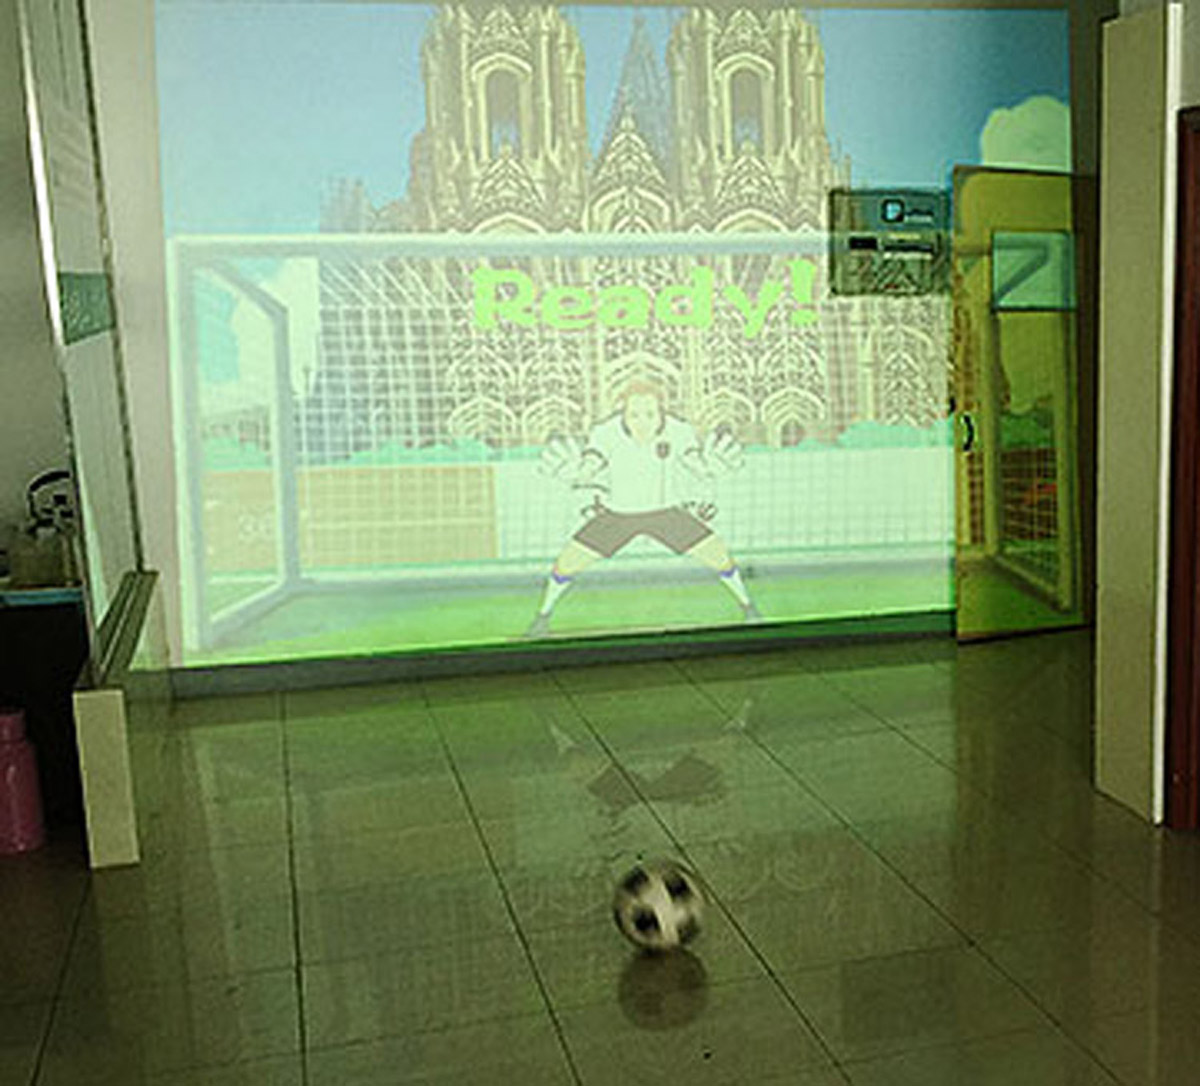 校园安全使用体感识别技术的虚拟足球射门.jpg